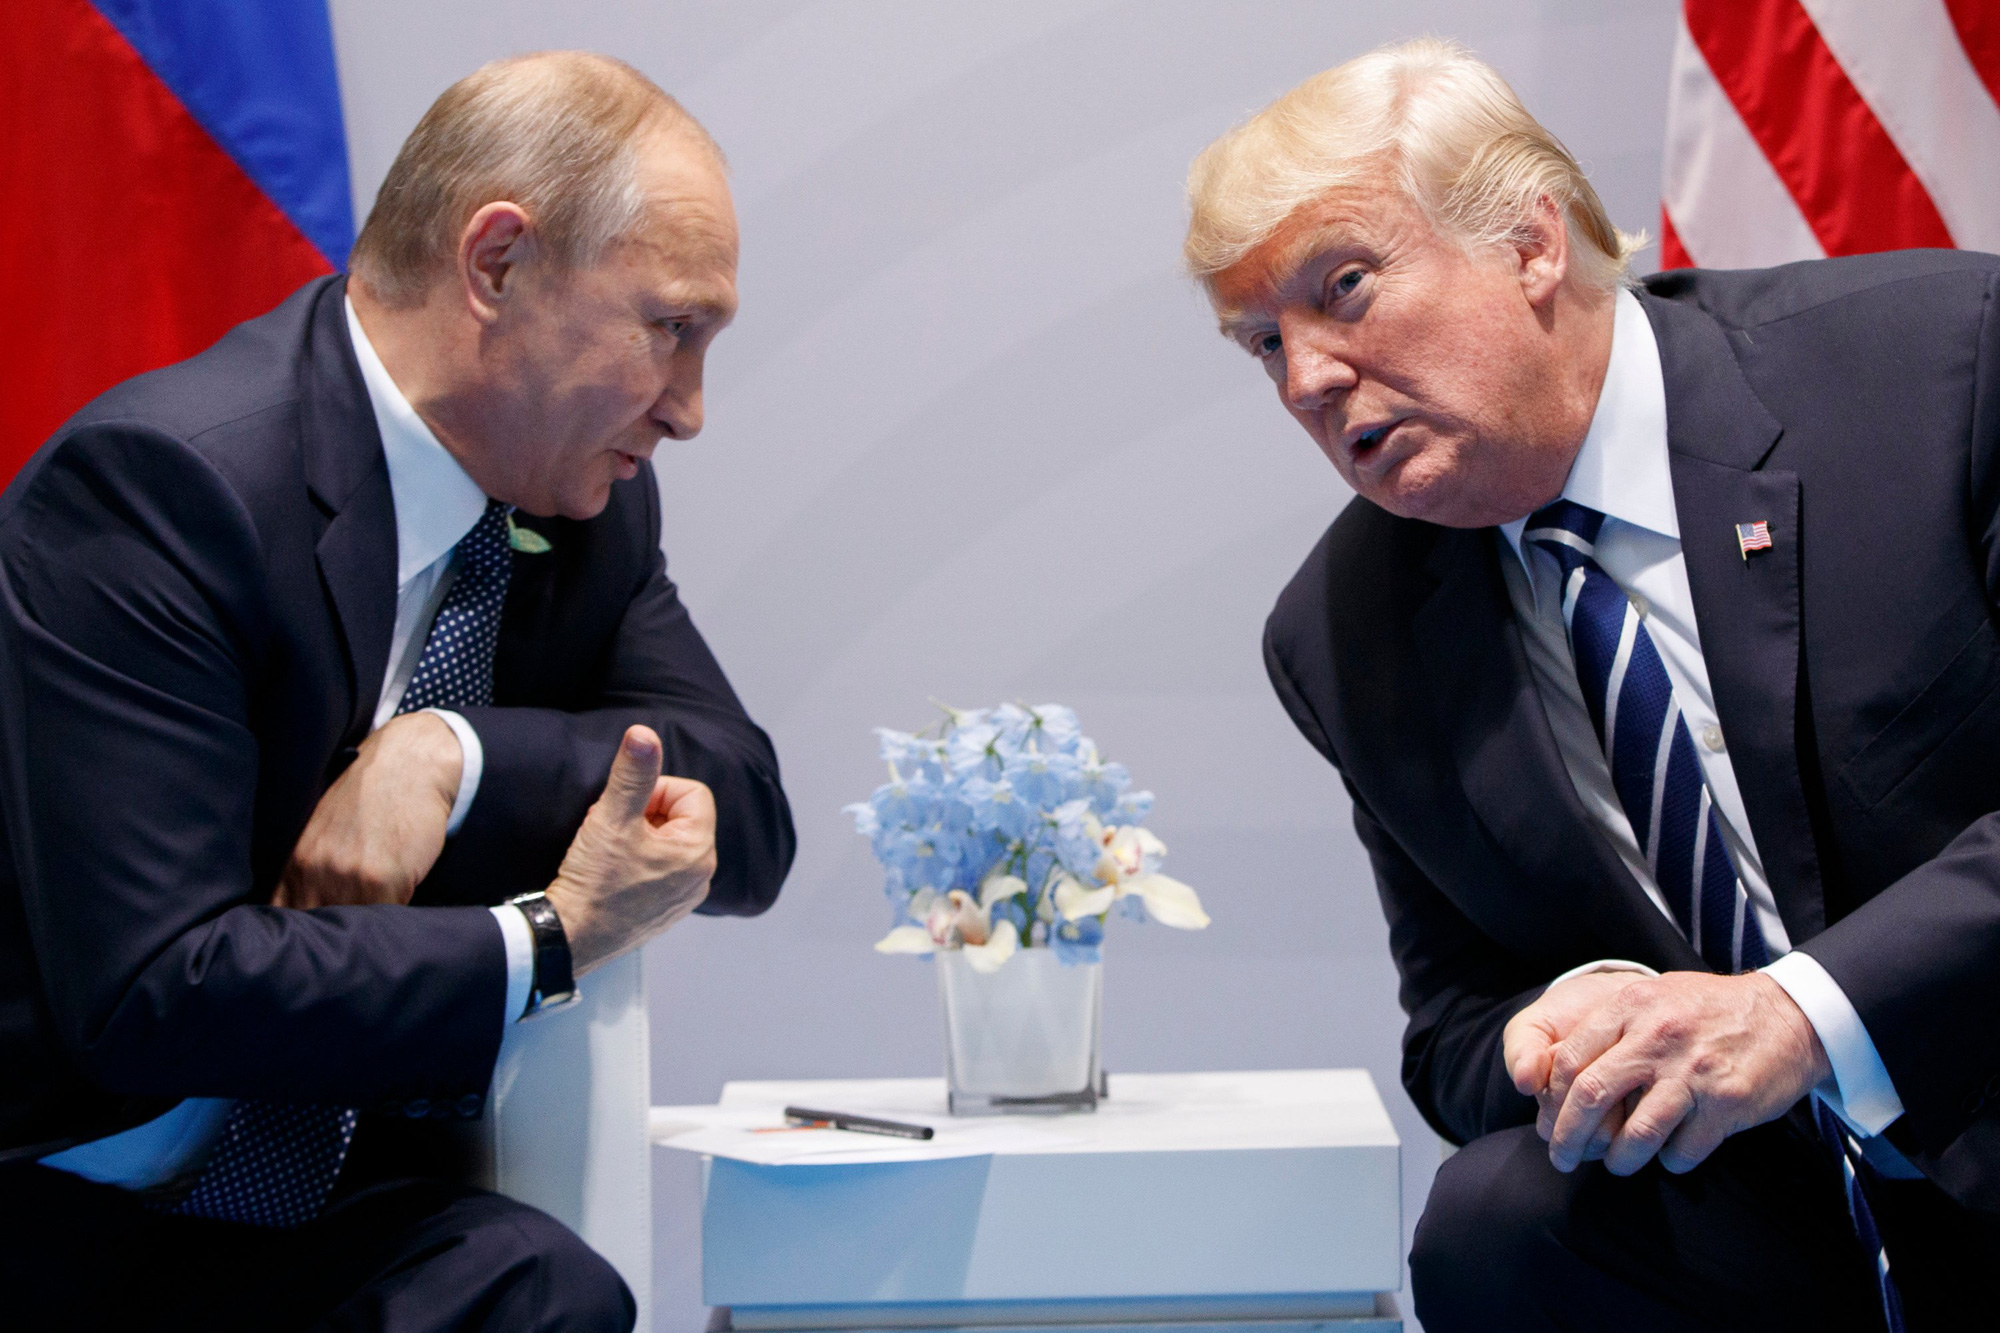 Bảo đảm bó tay: Nga đề nghị Mỹ một hiệp ước mới - Ảnh 1.